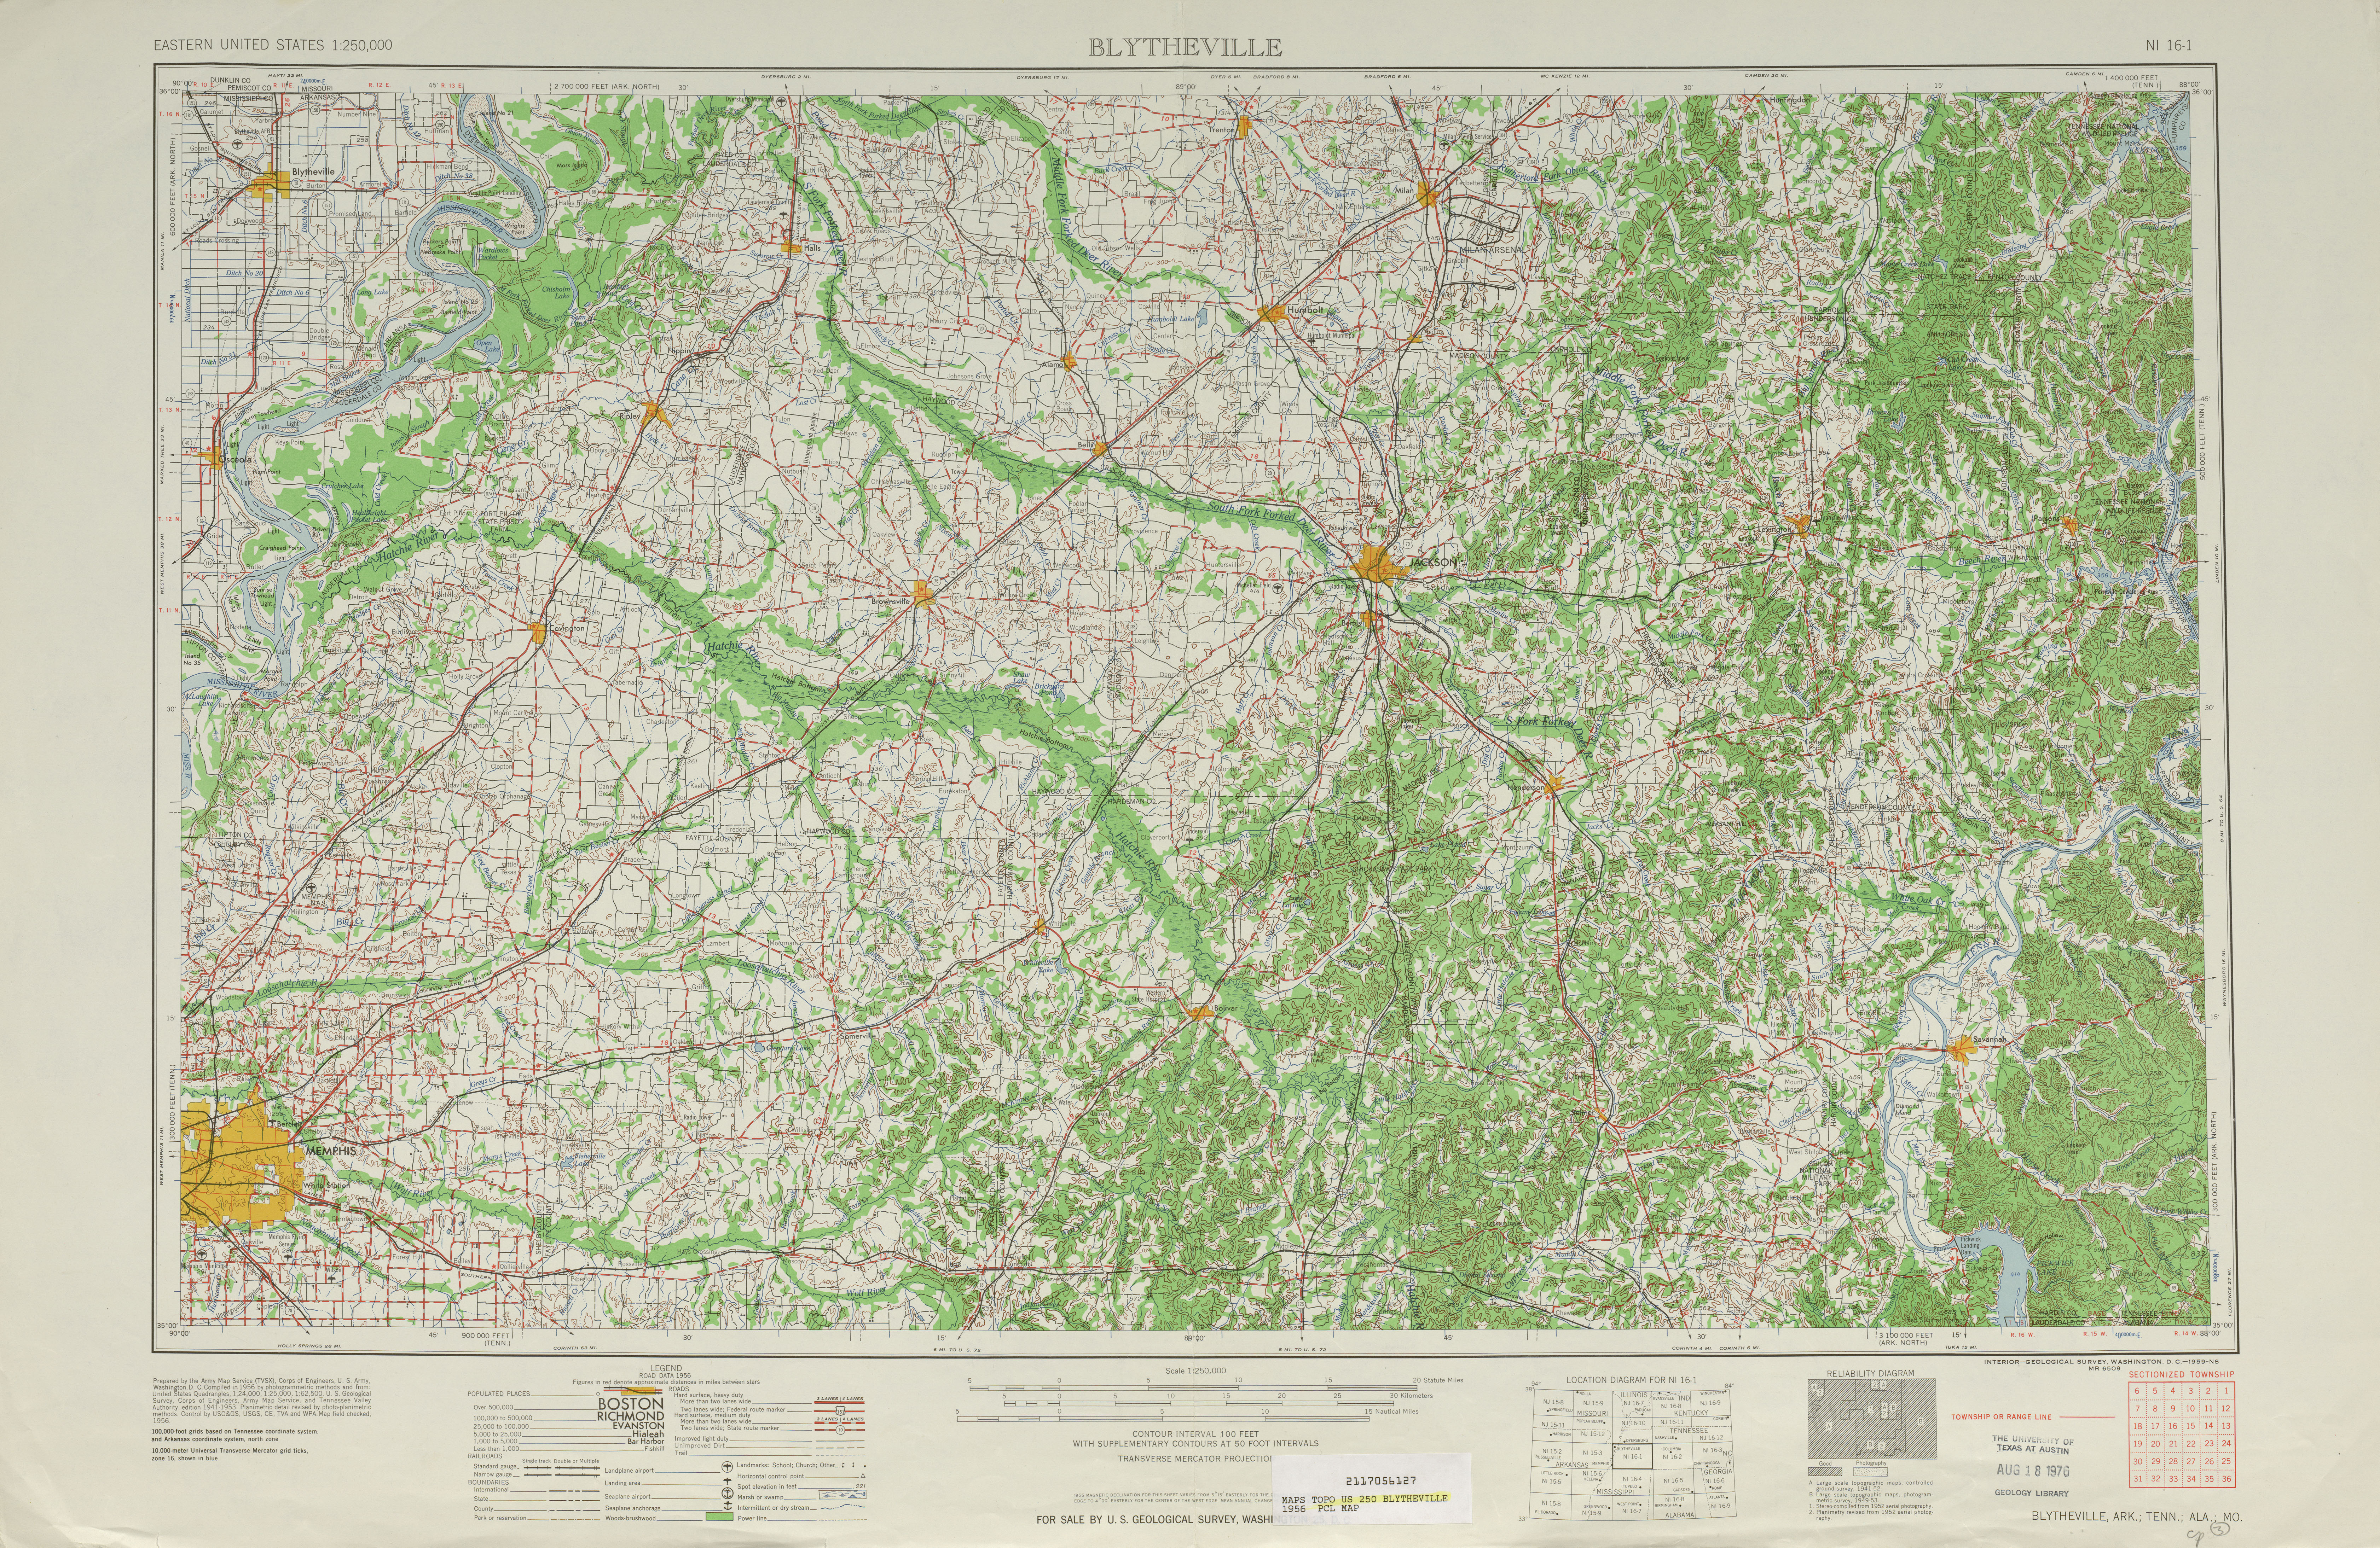 Hoja Blytheville del Mapa Topográfico de los Estados Unidos 1956